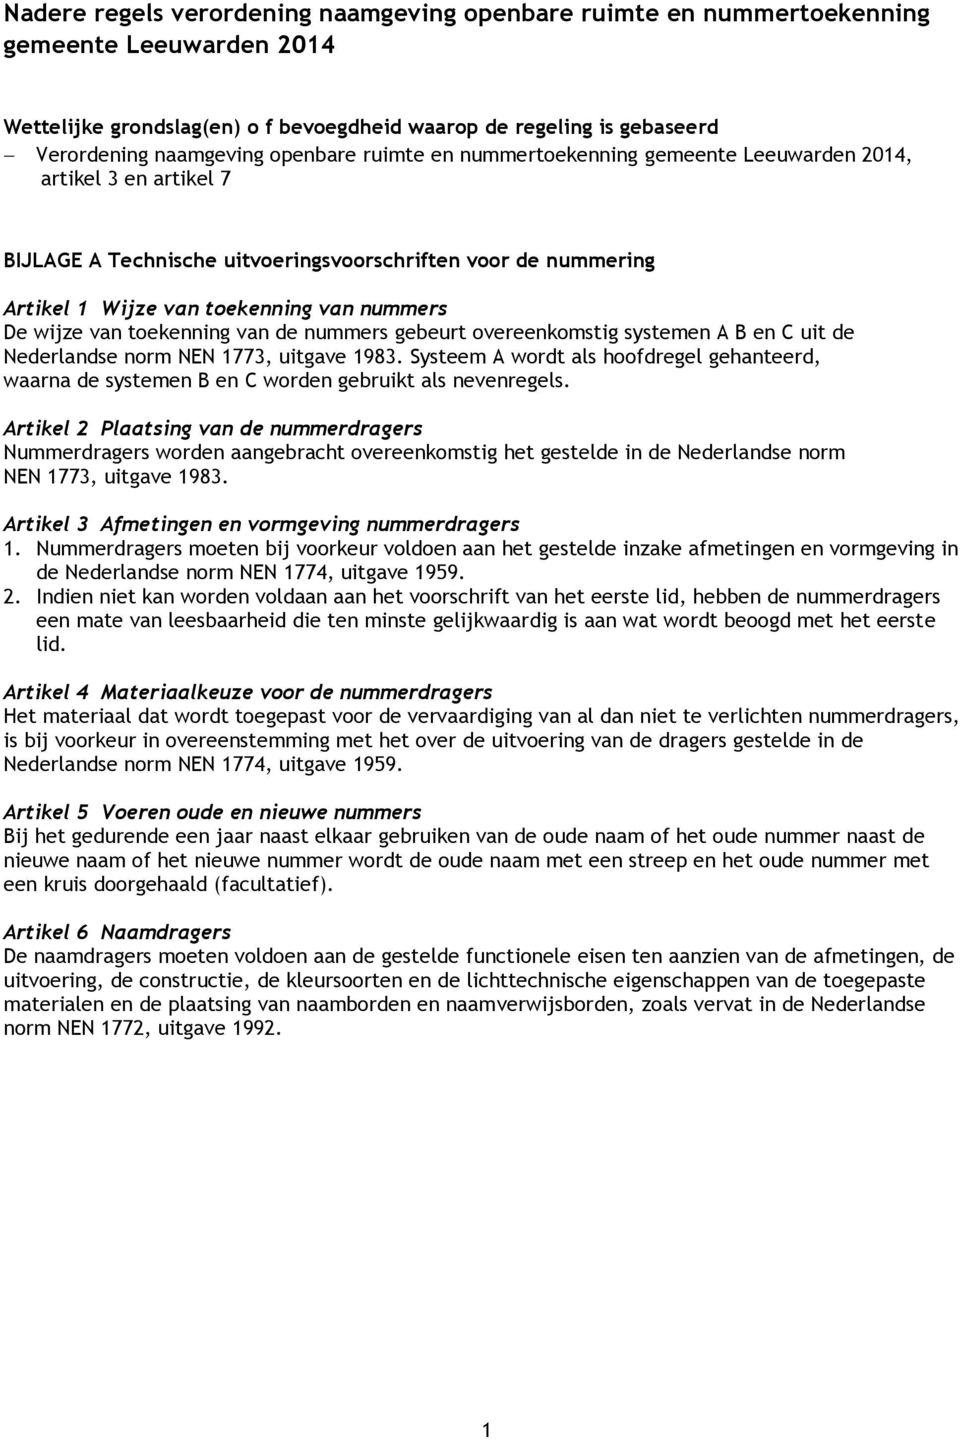 wijze van toekenning van de nummers gebeurt overeenkomstig systemen A B en C uit de Nederlandse norm NEN 1773, uitgave 1983.